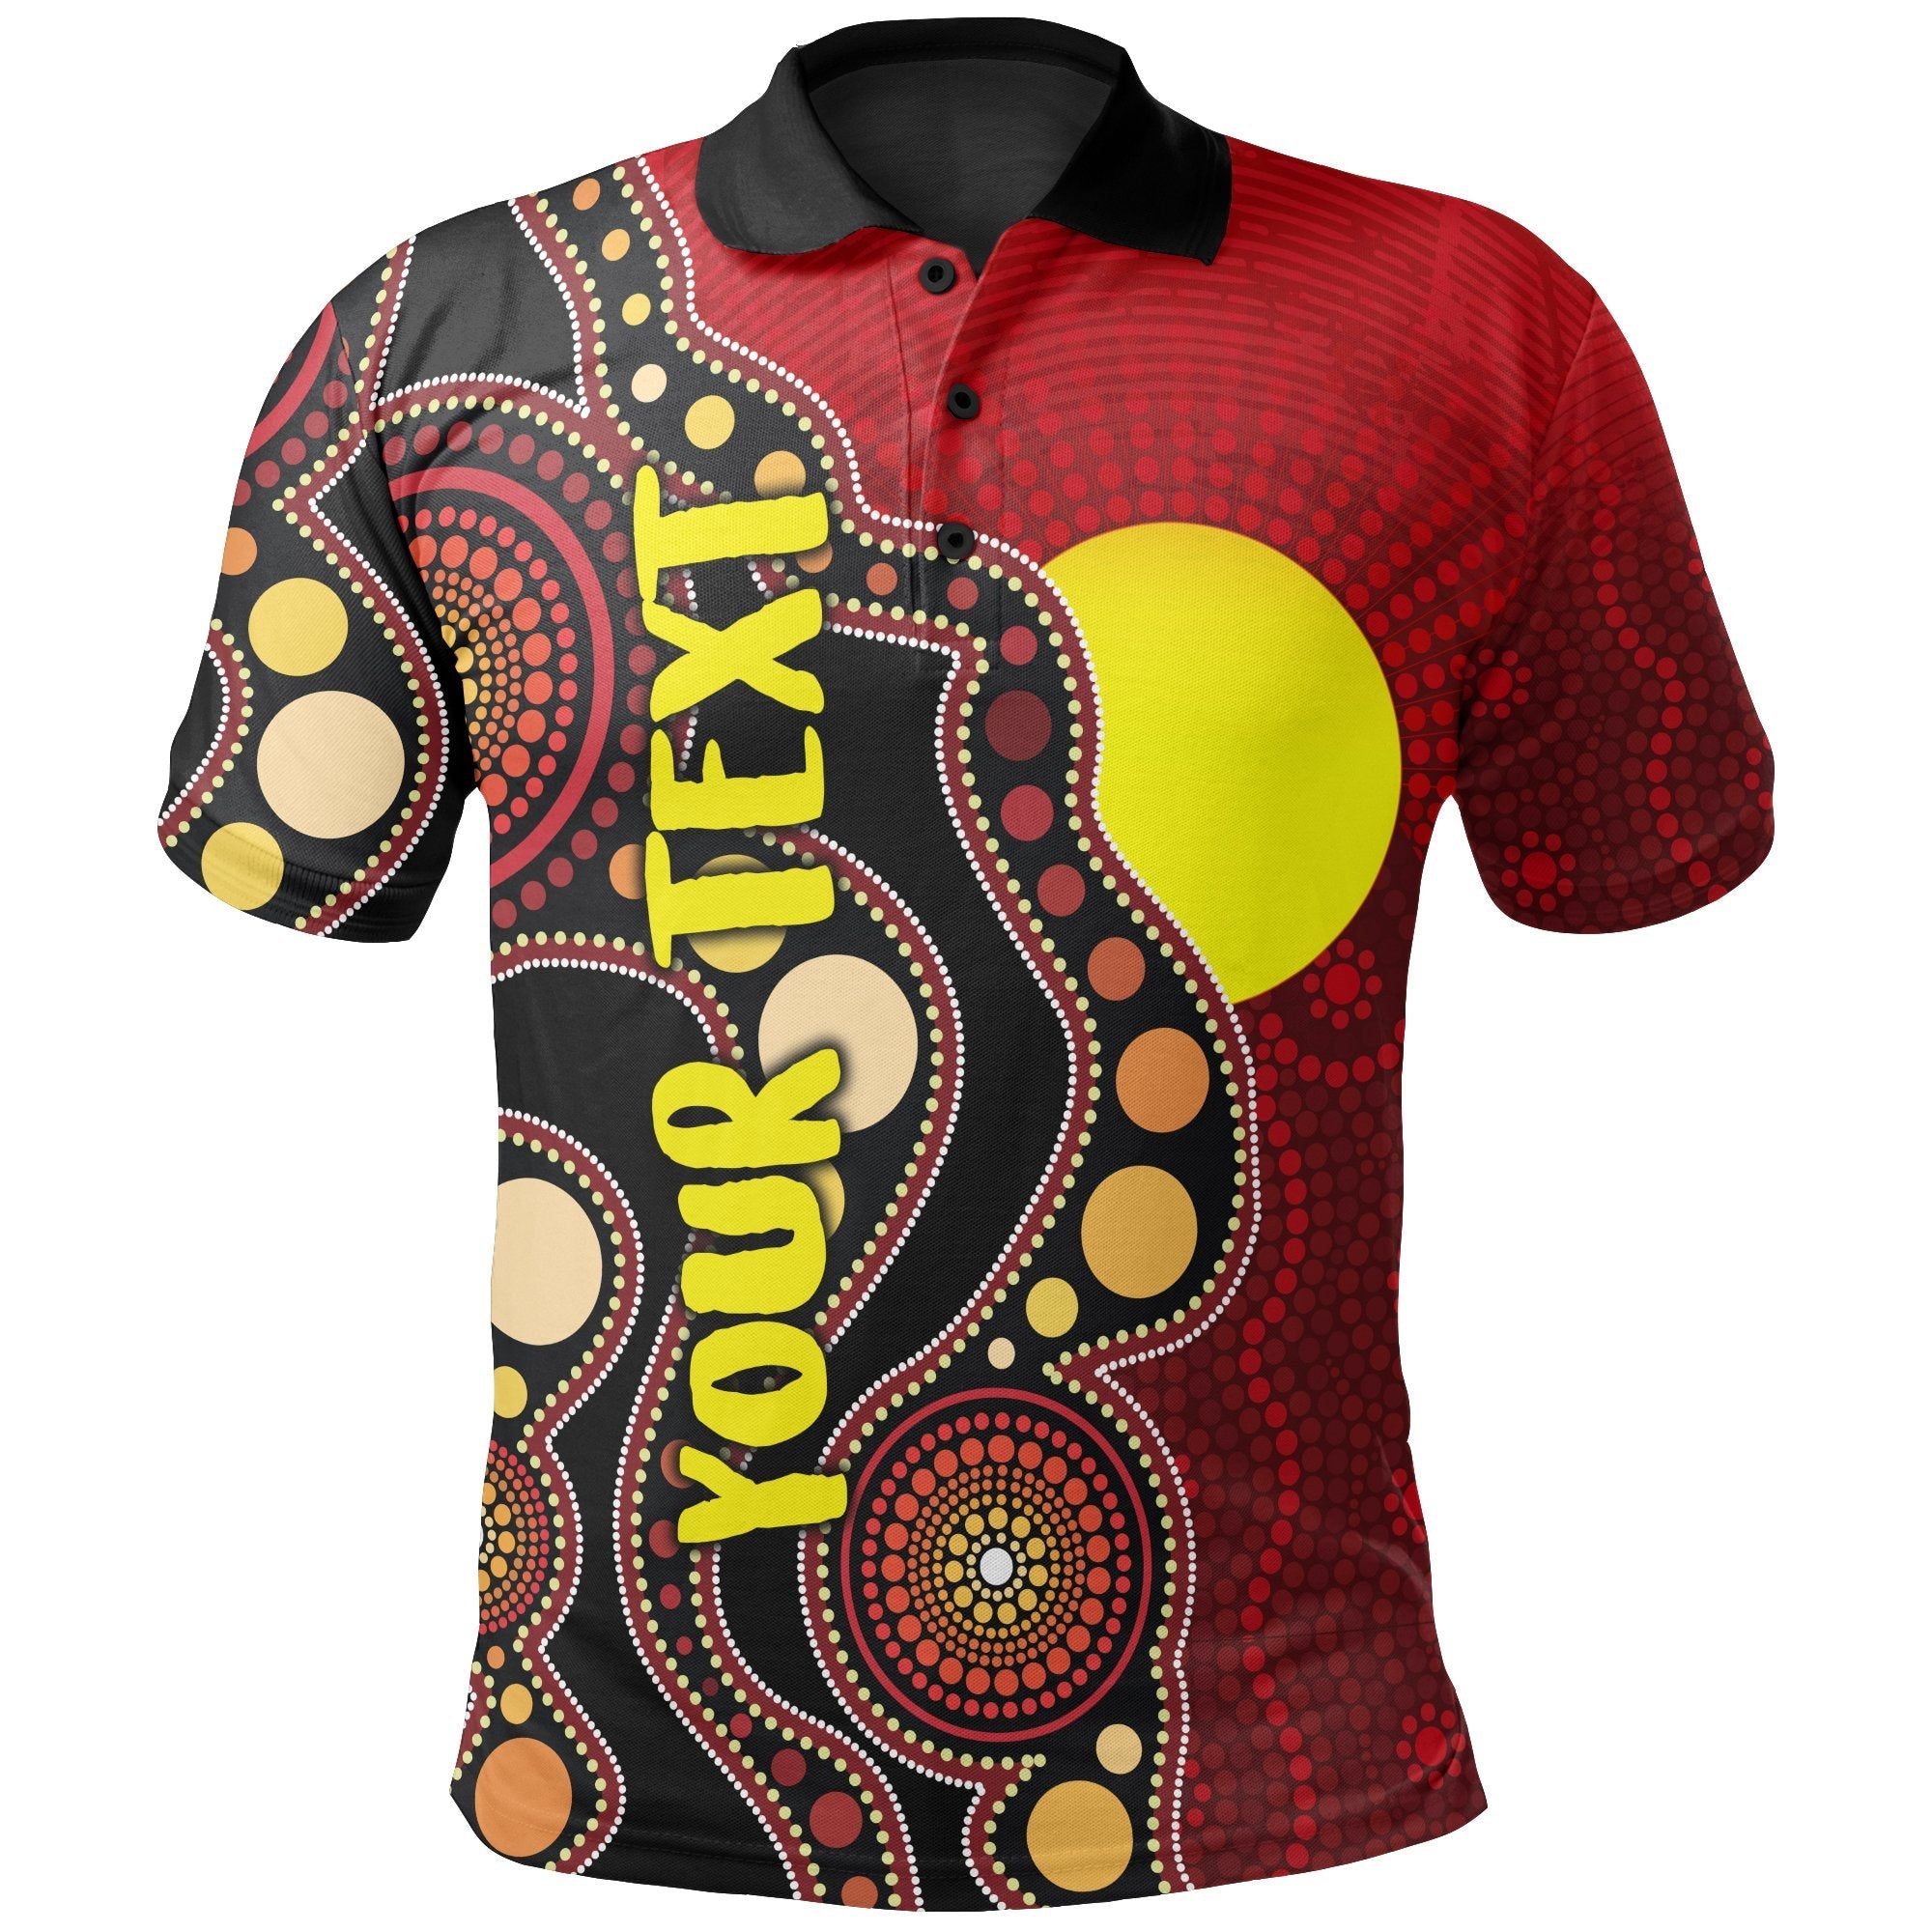 custom-aboriginal-polo-shirt-australia-aboriginal-lives-matter-flag